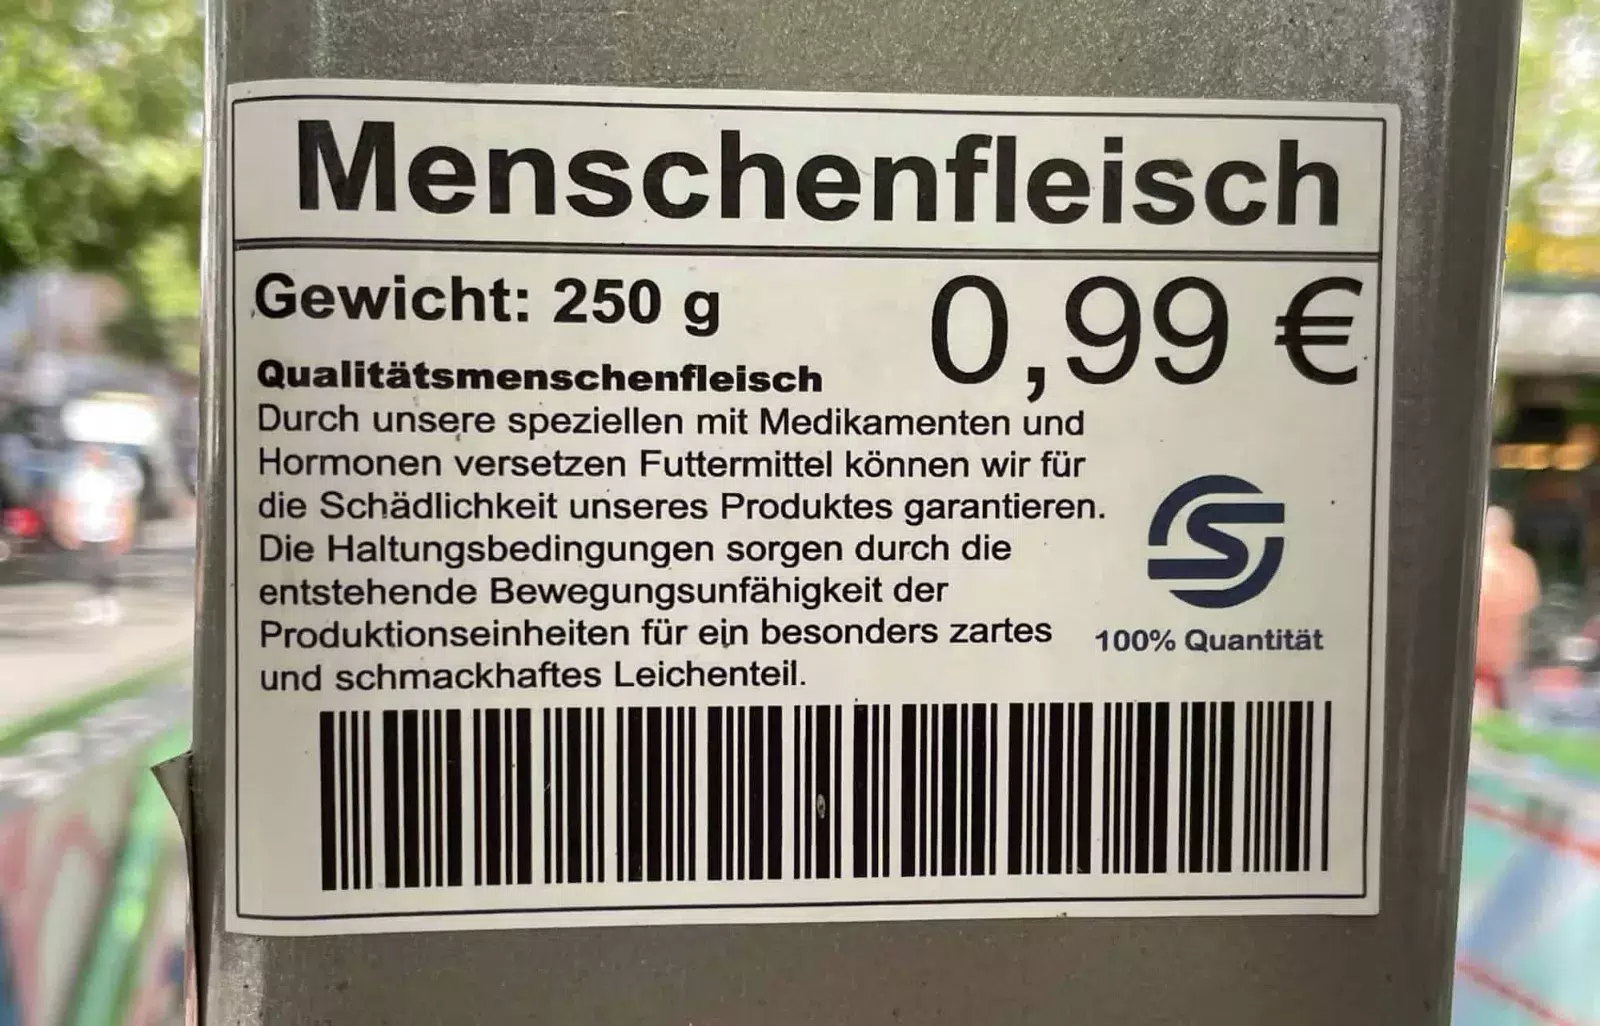 Ein satirischer Werbeaufklebr für schmackhaftes Menschenfleisch zu 0,99 EUR/250 g an einer Straßenlaterne.